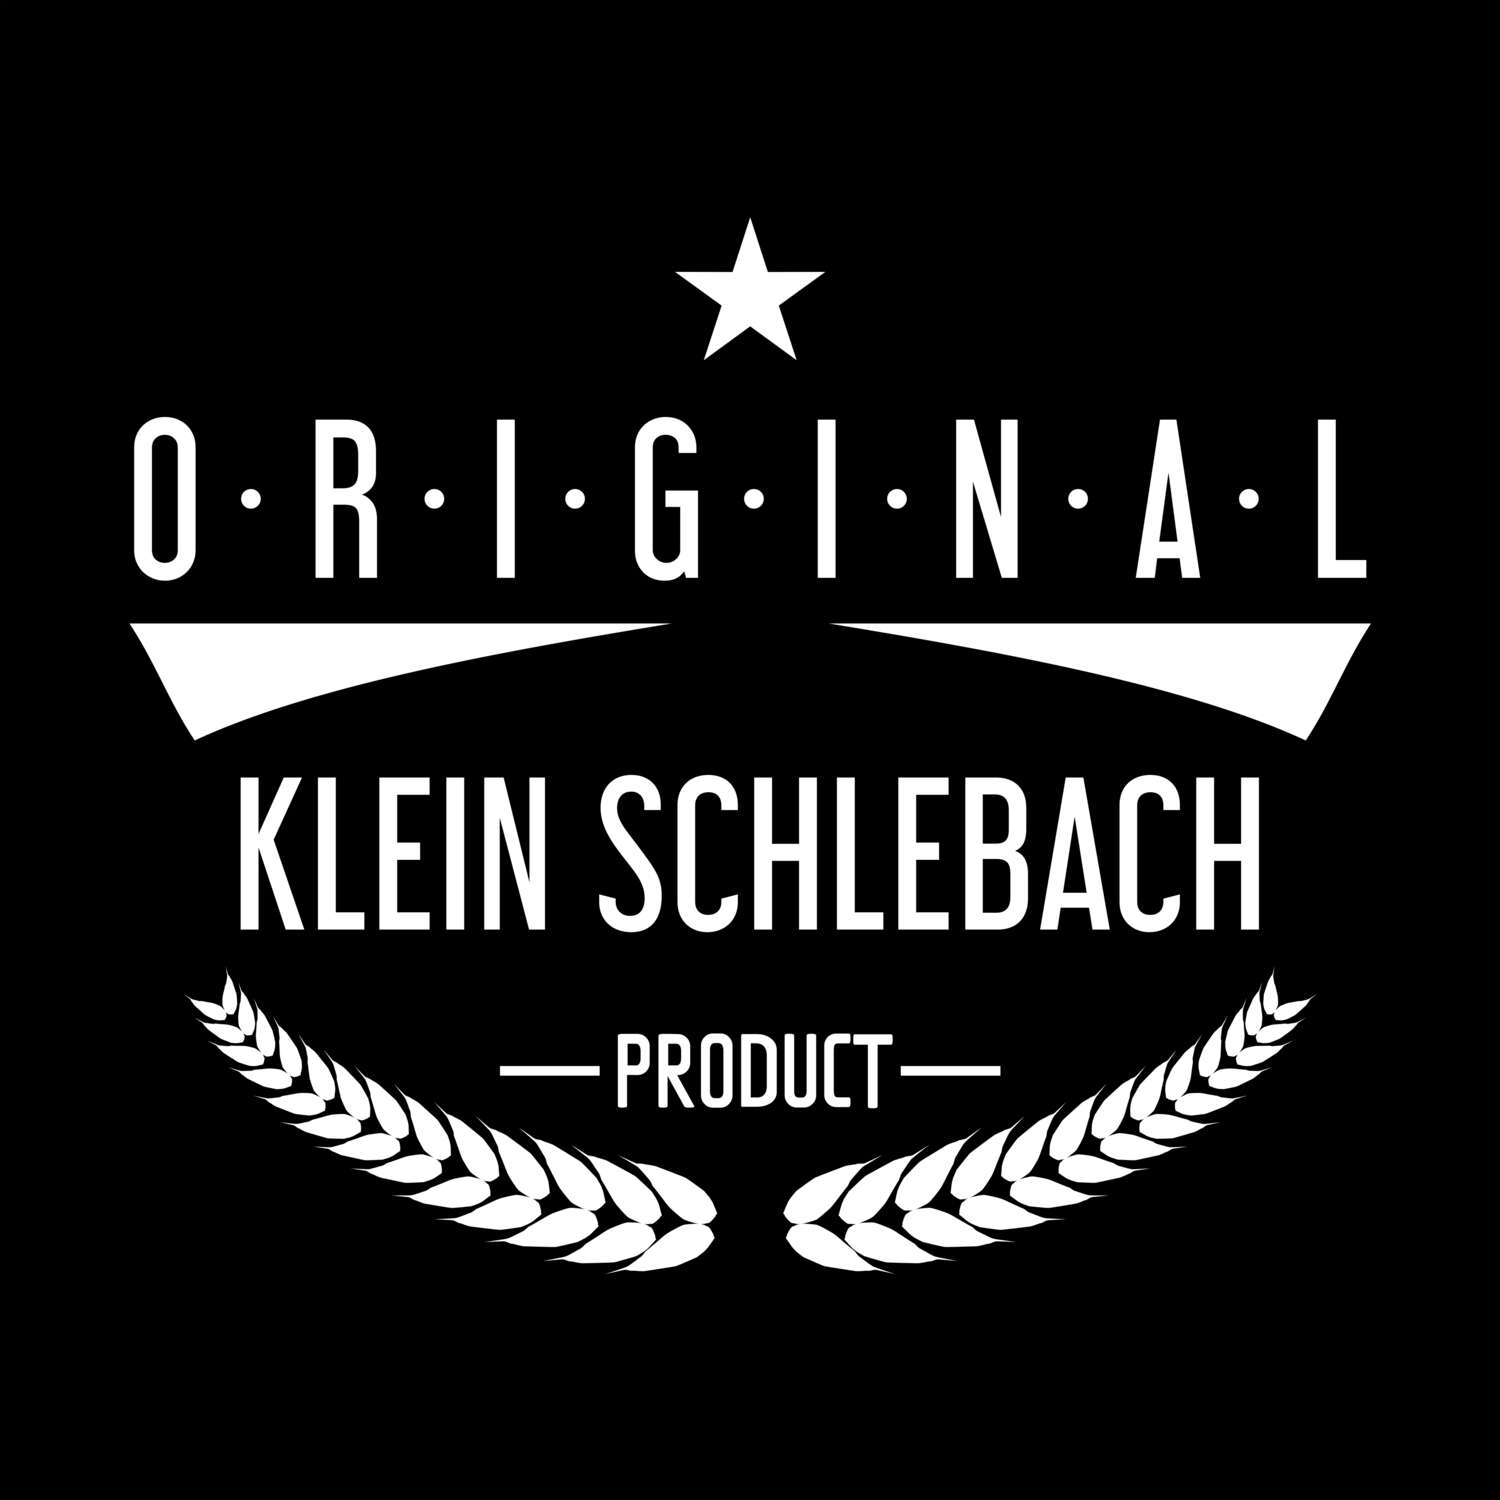 Klein Schlebach T-Shirt »Original Product«